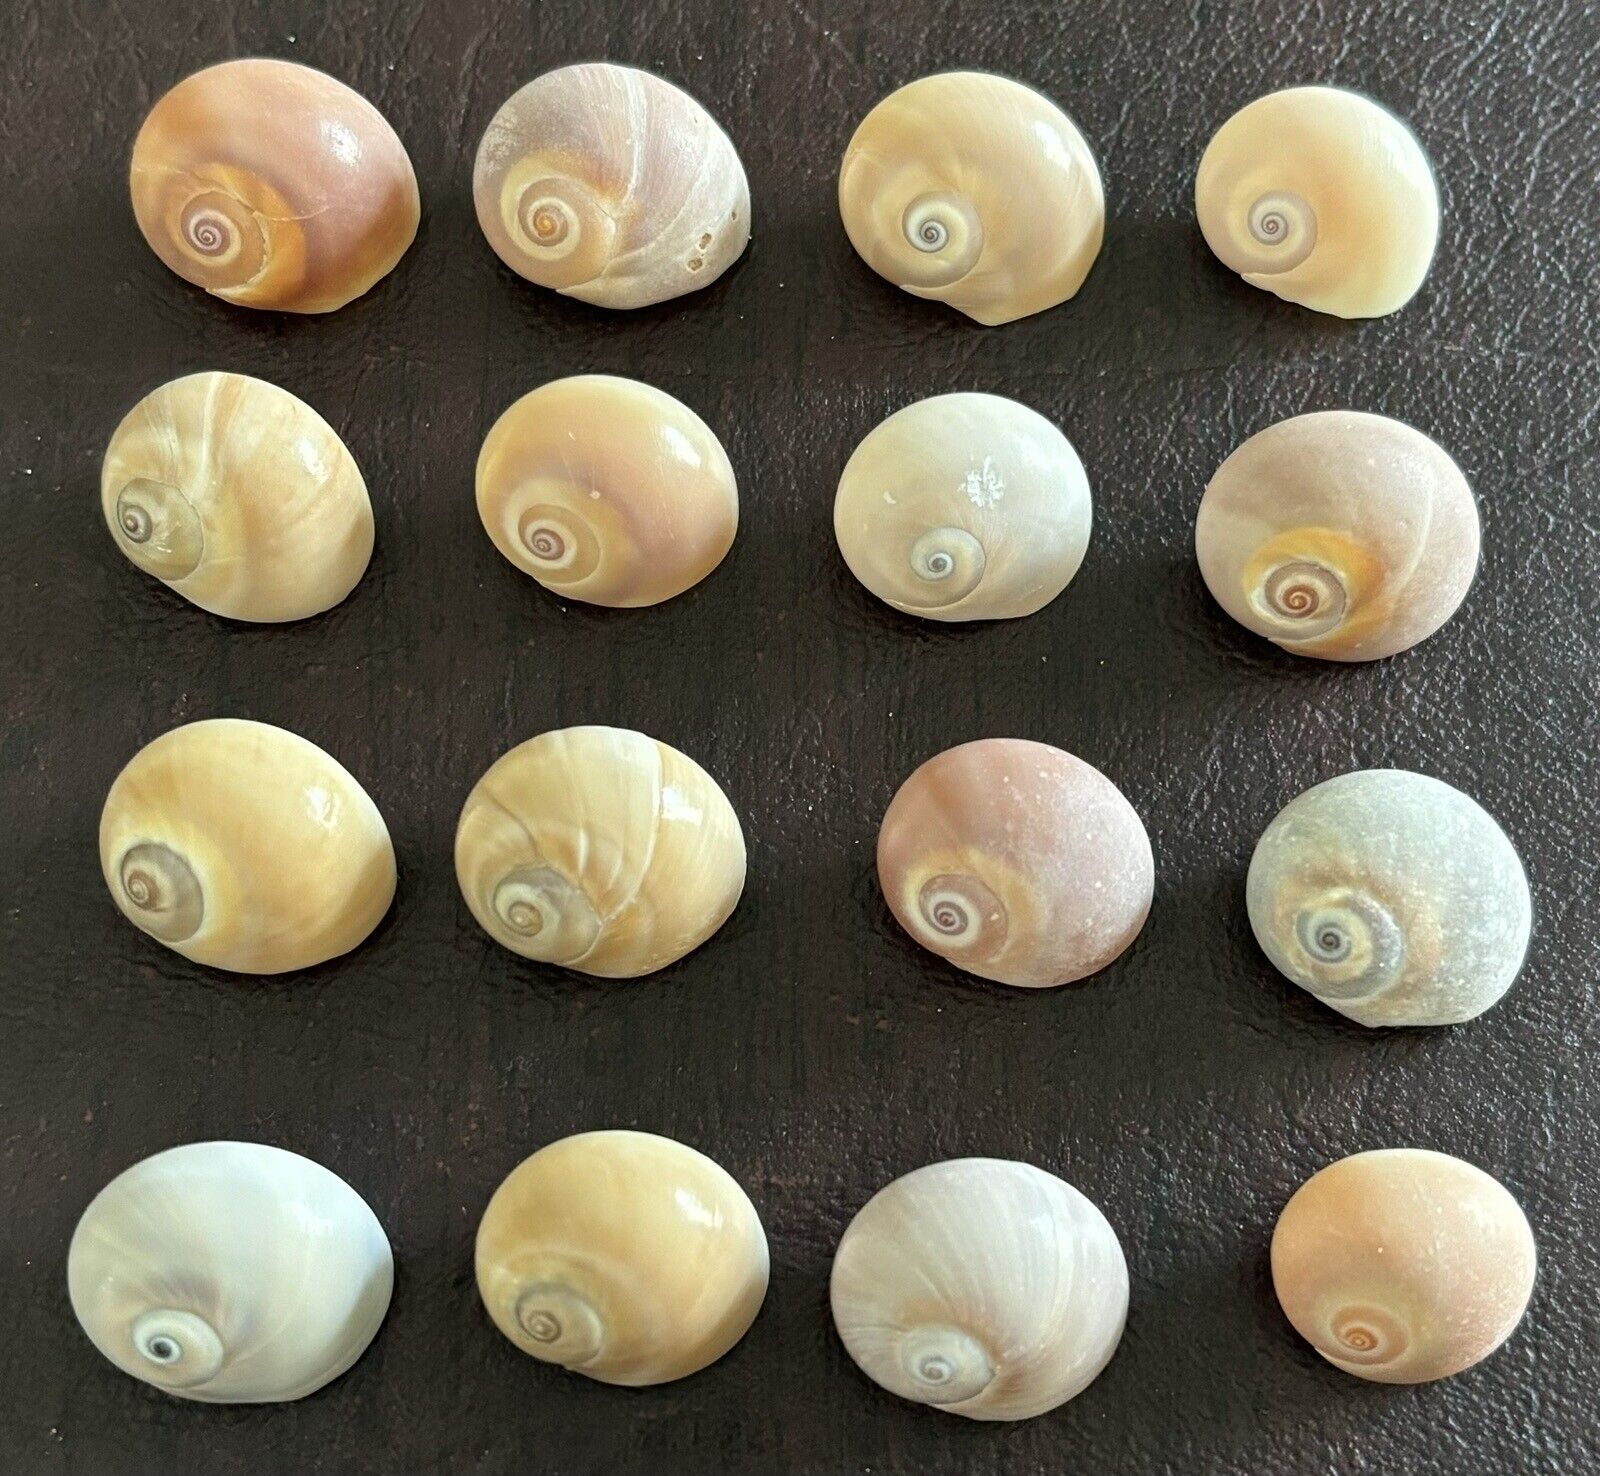 16 Shark Eye Moon Snail Seashells from Sanibel Island, Florida. Approx  3/4”